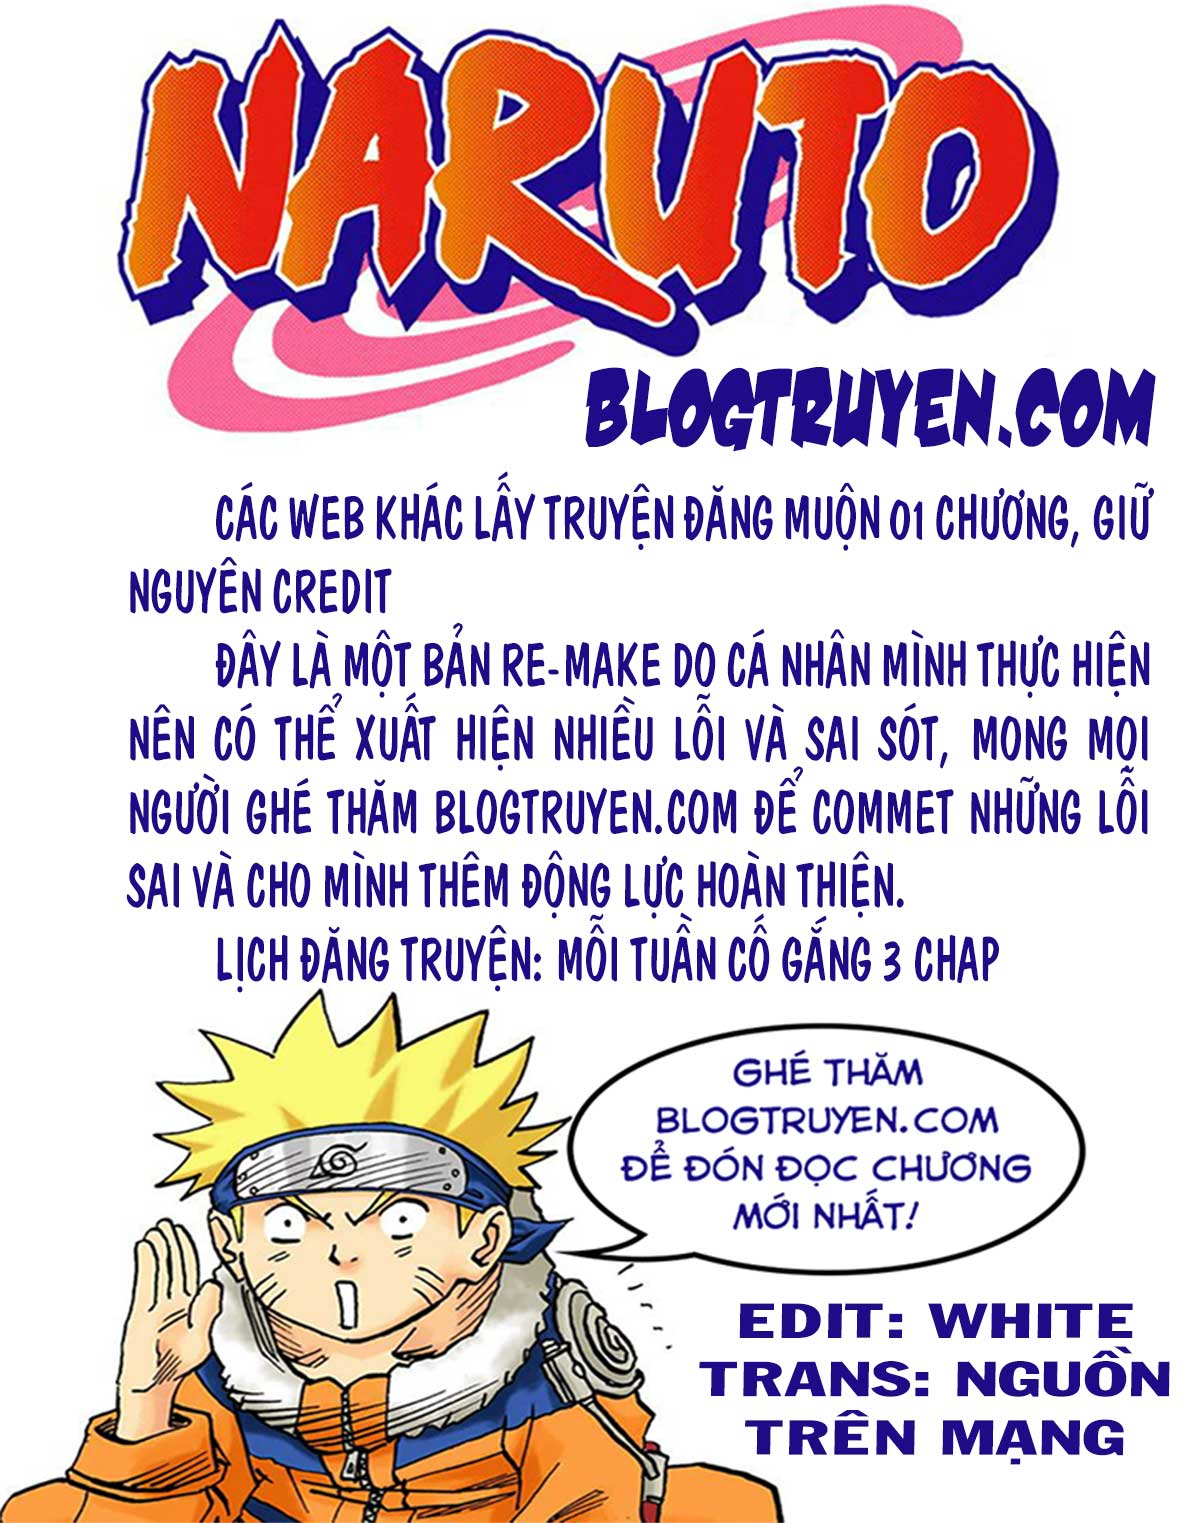 Naruto Full Color Edition Chương 244 Ngo i truy n 5 Anh h ng Sharingan Trang 1